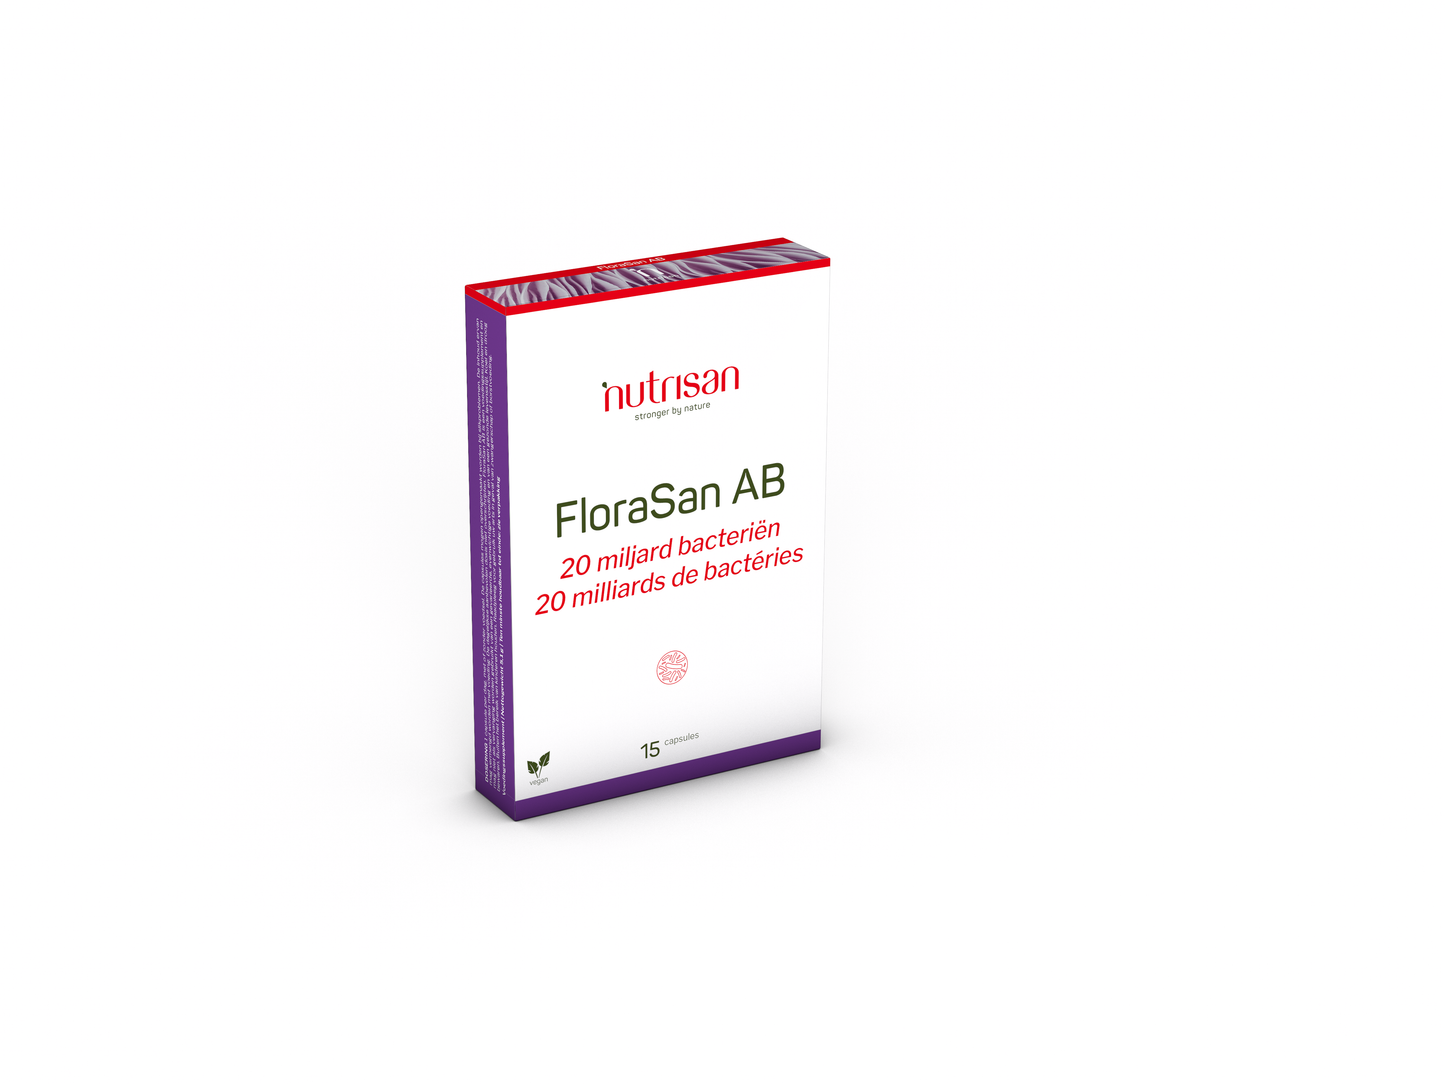 Nutrisan FloraSan AB - 15 capsules - Prebioticum - Synbiotica